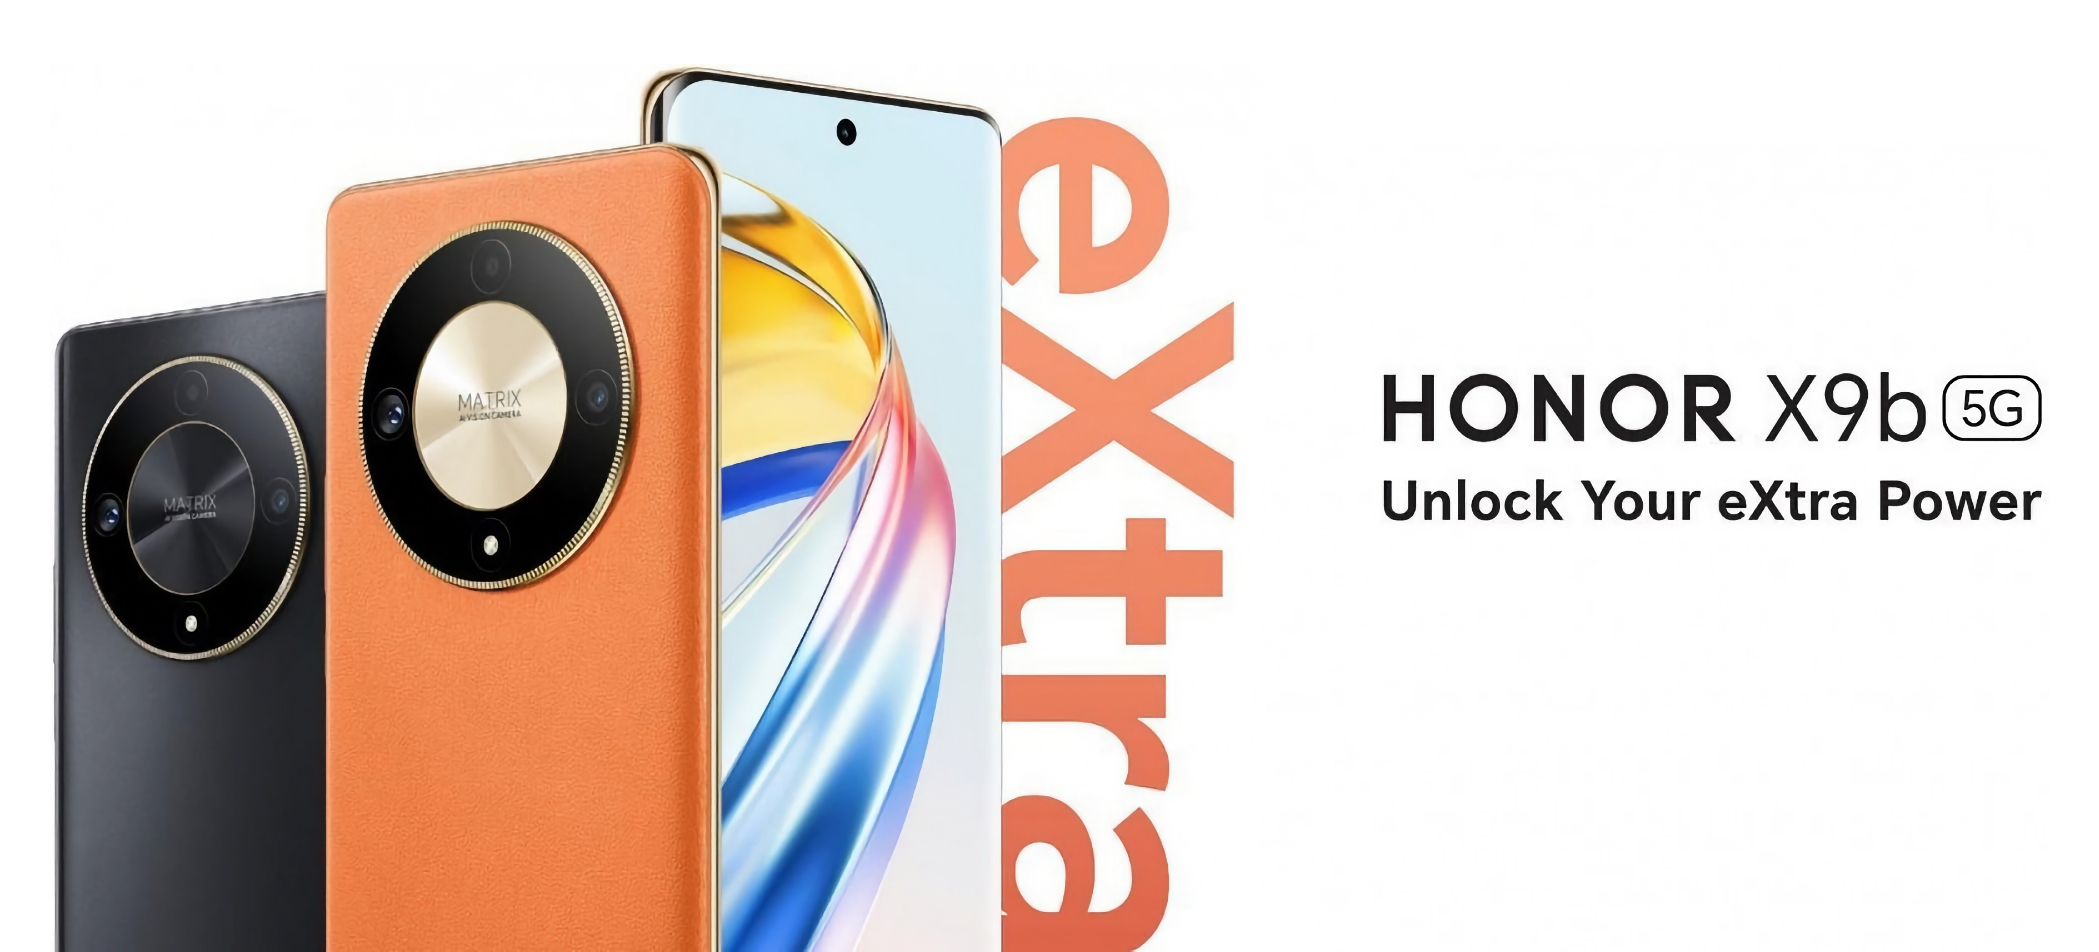 Presentado Honor X9b: smartphone con pantalla AMOLED de 120 Hz, chip Snapdragon 6 Gen 1, cámara de 108 MP y protección IP53 por 275 dólares